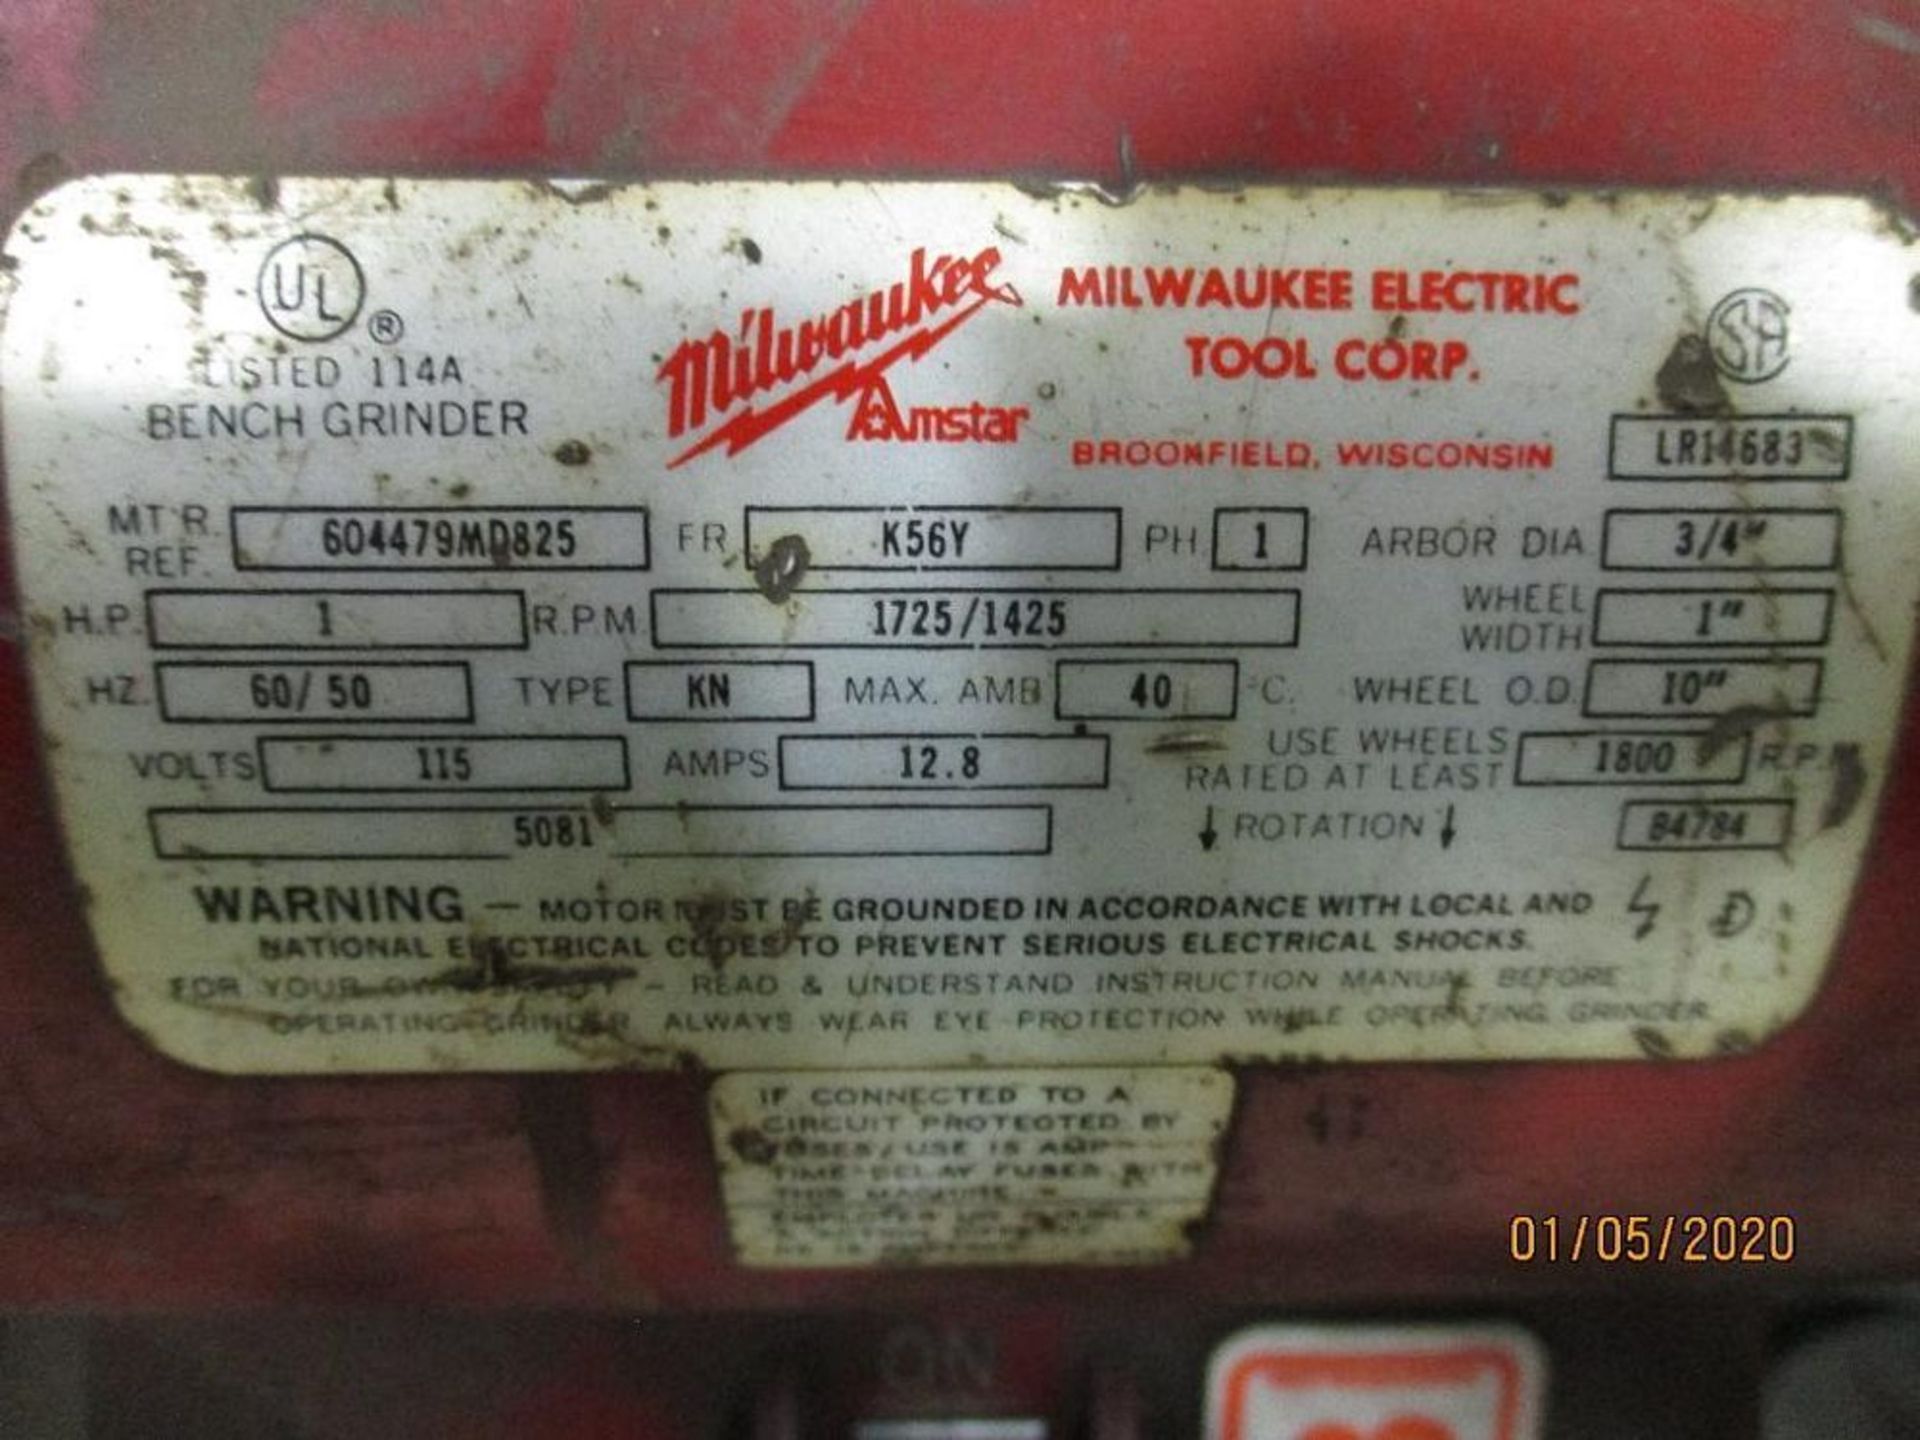 Milwaukee Pedestal Grinder, 1hp, 3/4" Arbor, 10" Wheels, M/N 604479MD825 - Image 2 of 2